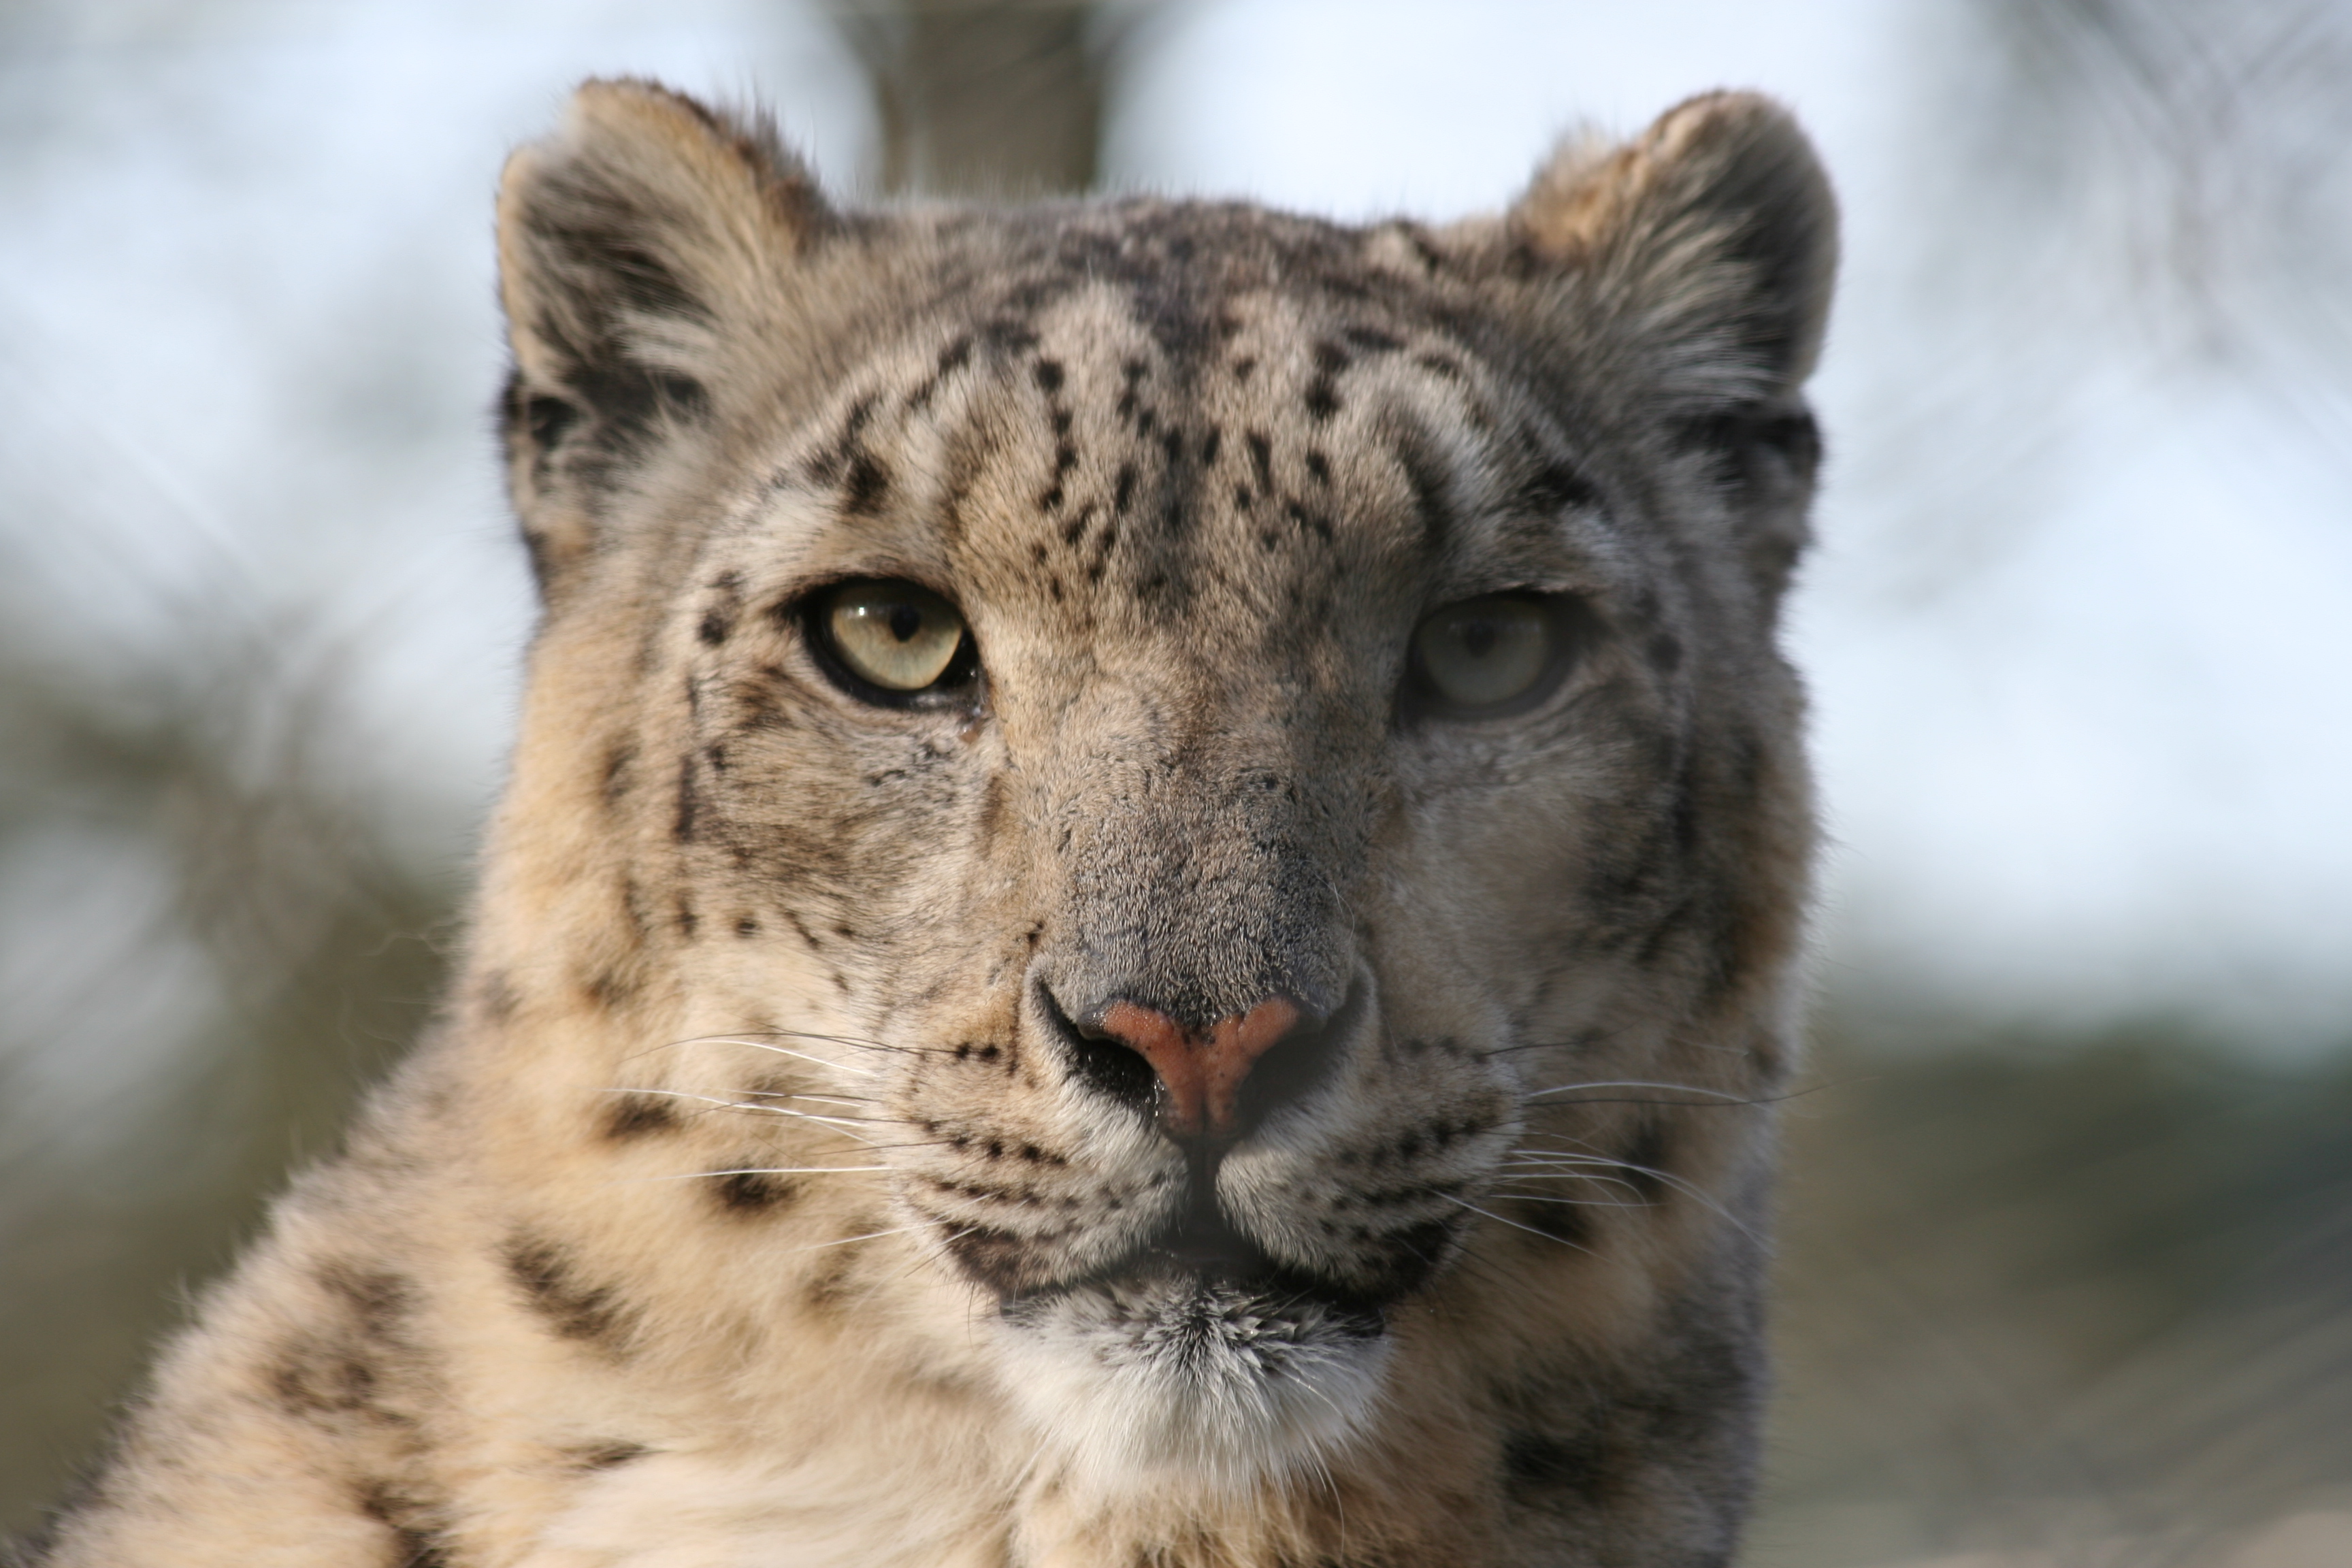 animals, snow leopards - desktop wallpaper